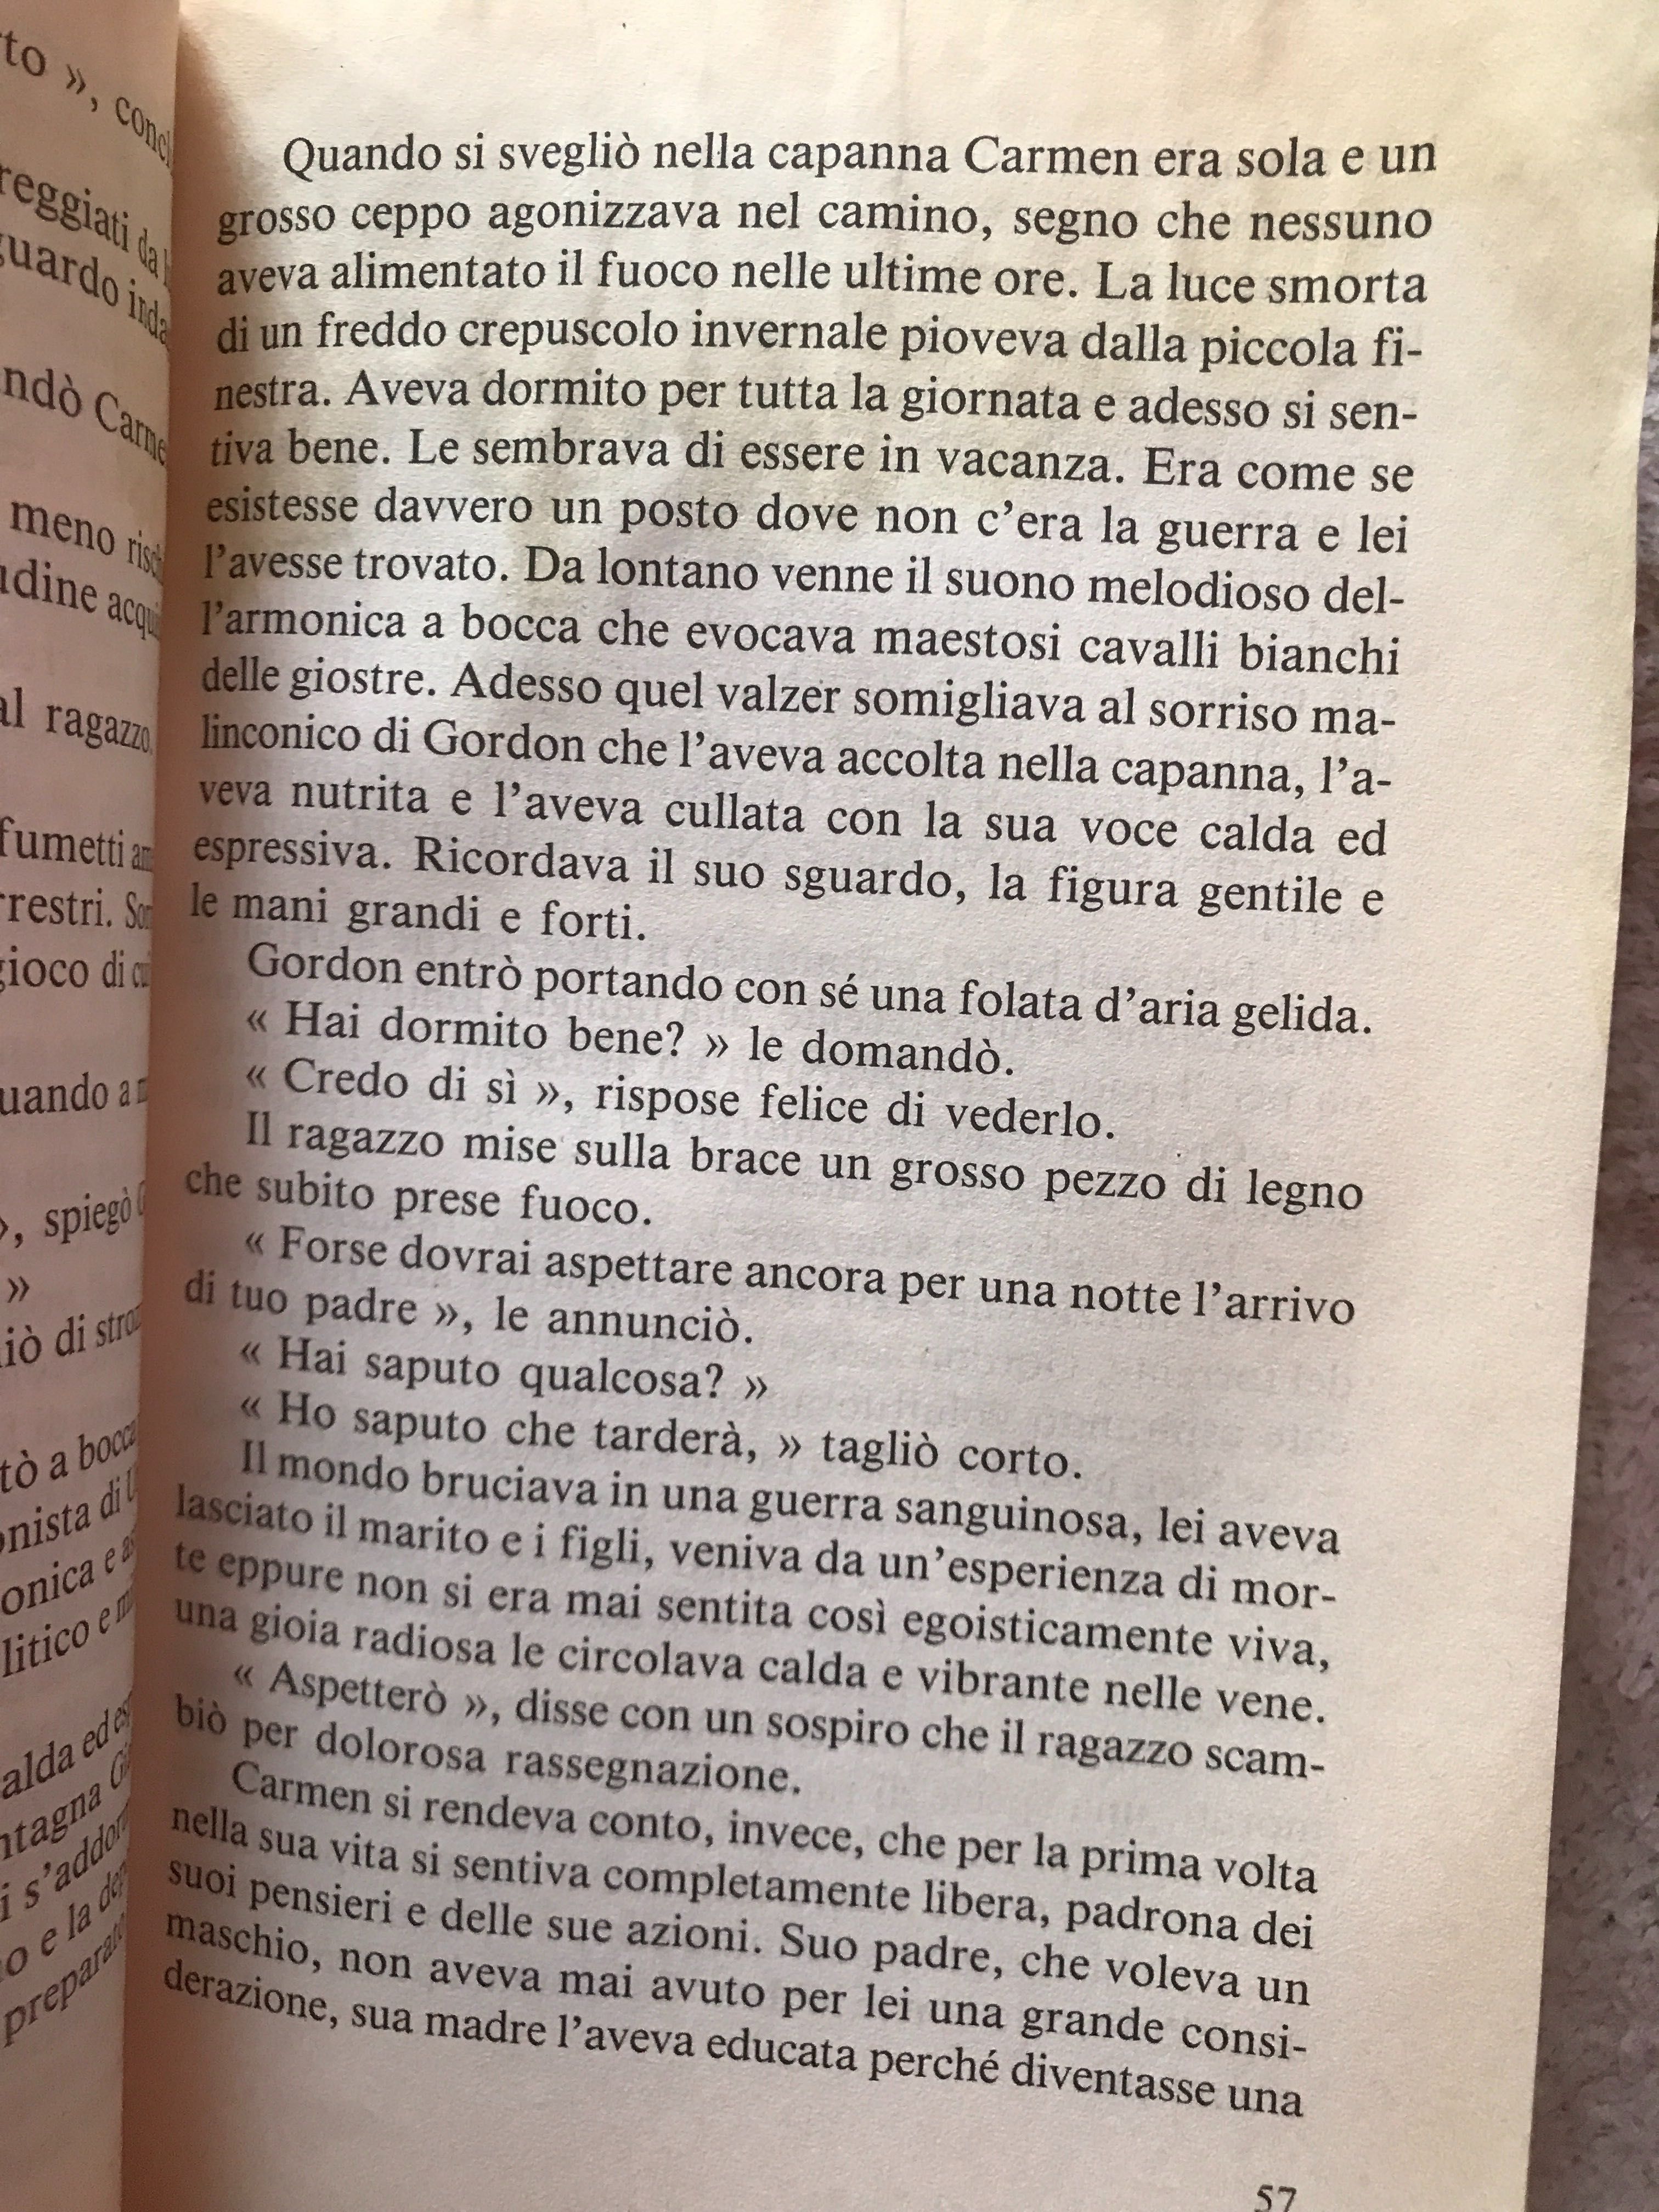 Книга на итальянском языке